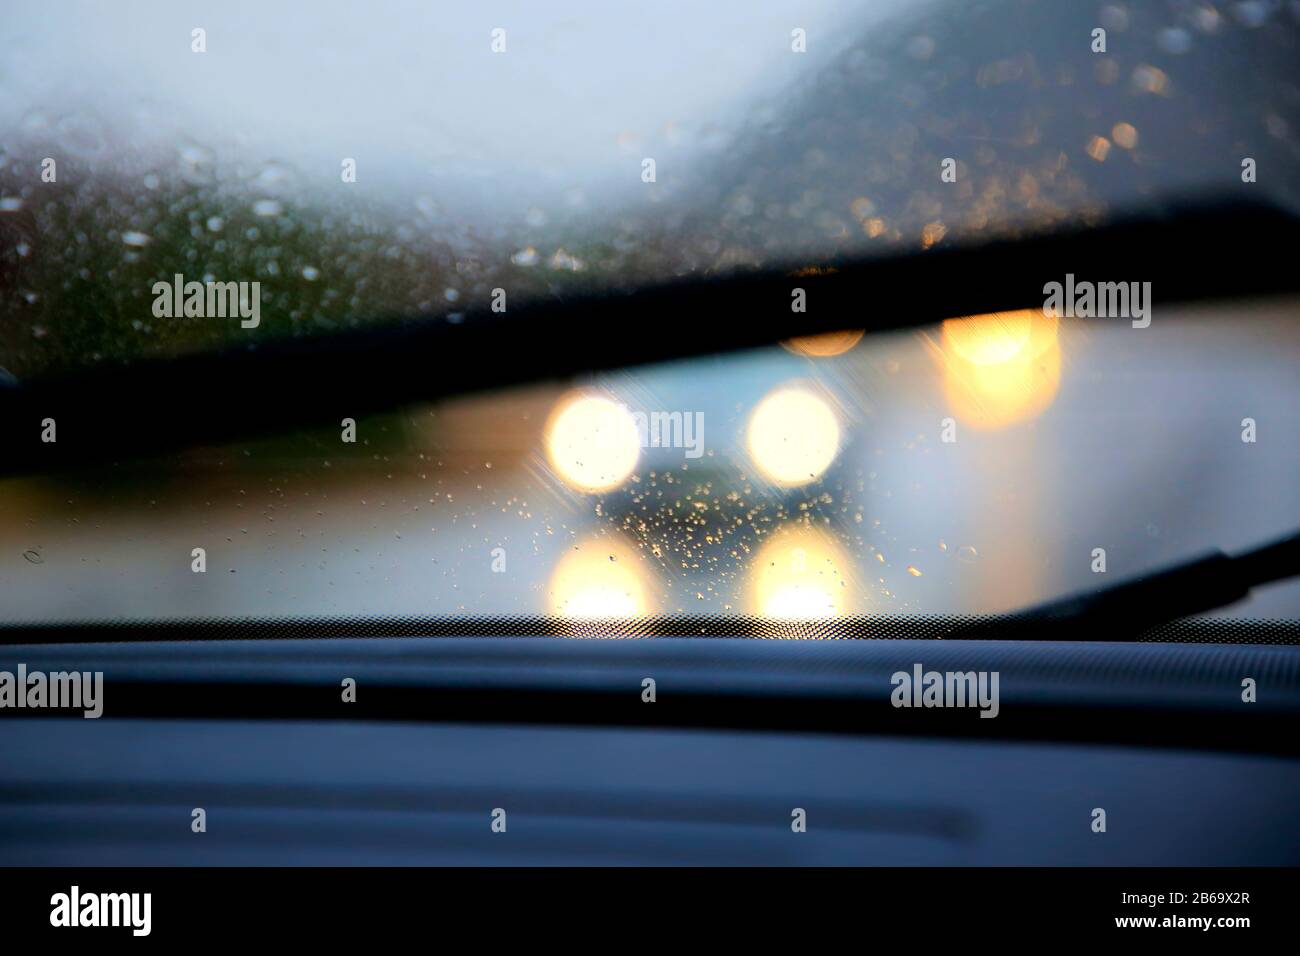 Conduite sur route sous forte pluie, essuie-glaces allumés, faible visibilité avec phares éblouissants de la circulation. Banque D'Images